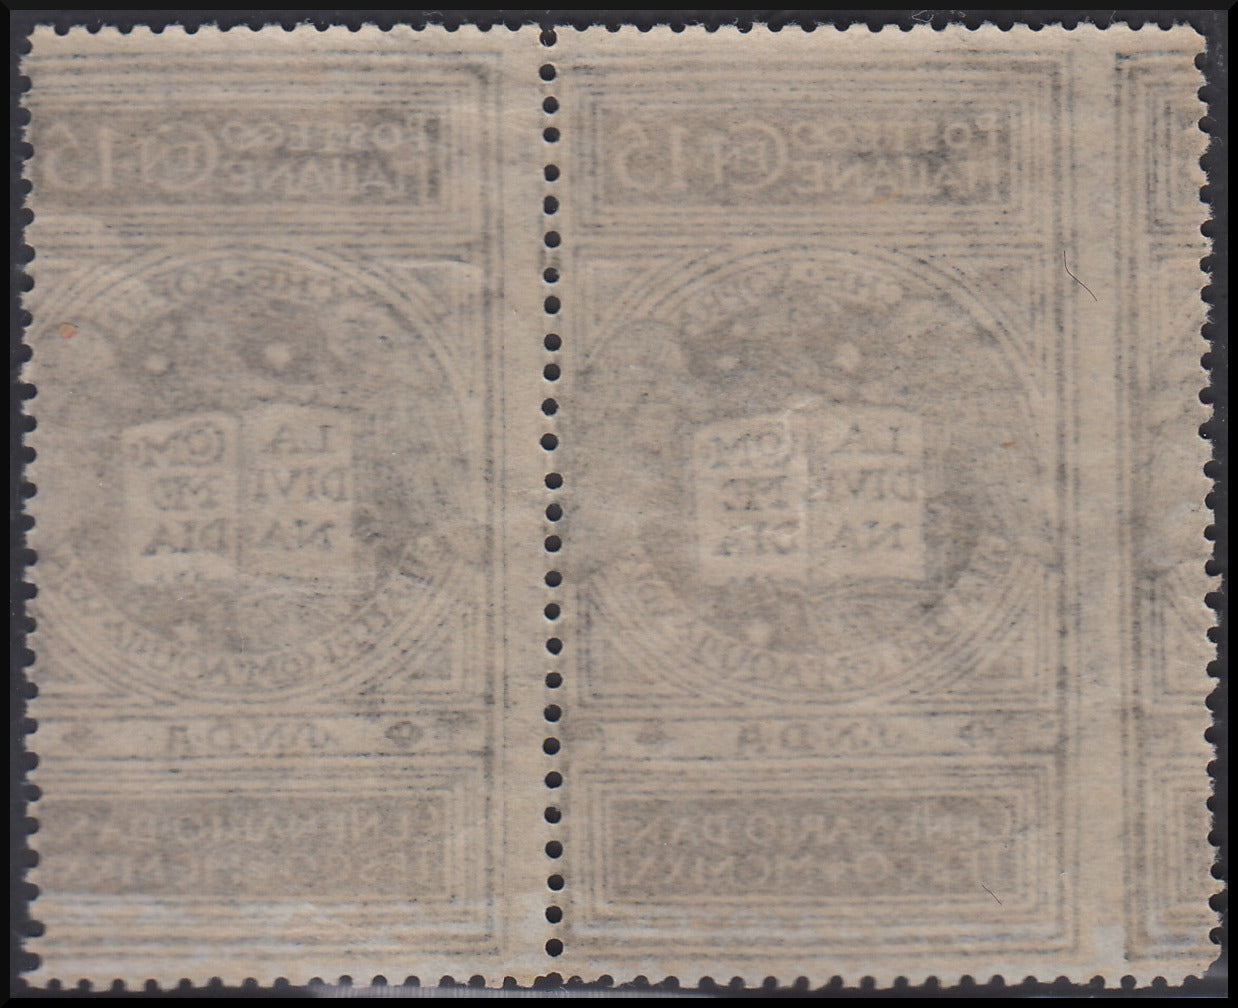 1921 - 6° centenario della morte di Dante, c.15 grigio colore diverso con varietà (116Andc + 116)